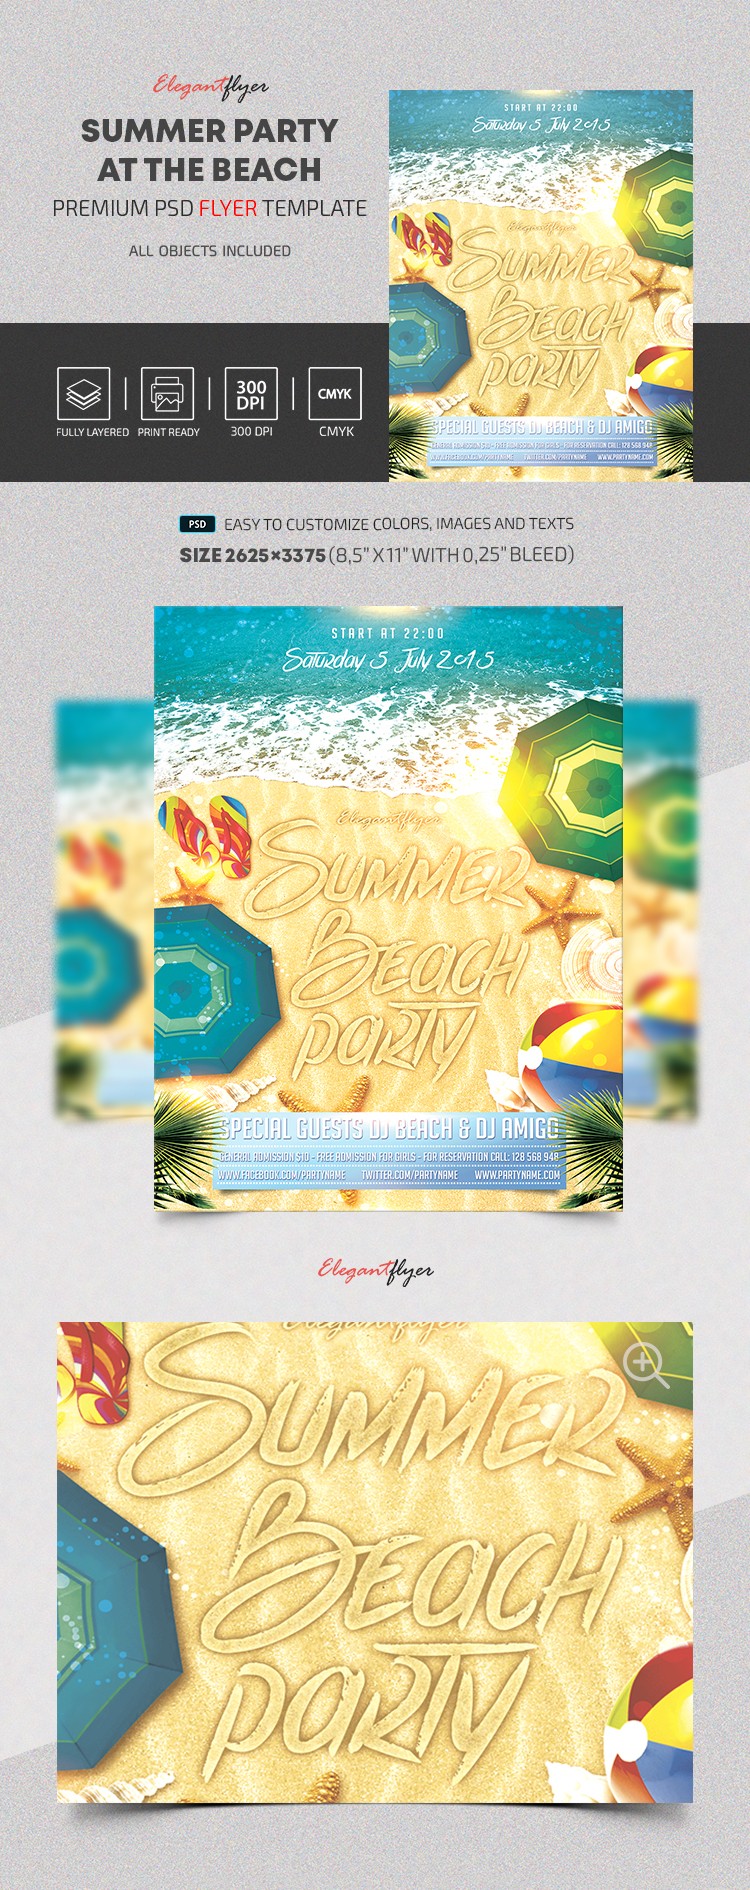 Sommerparty am Strand V3 by ElegantFlyer